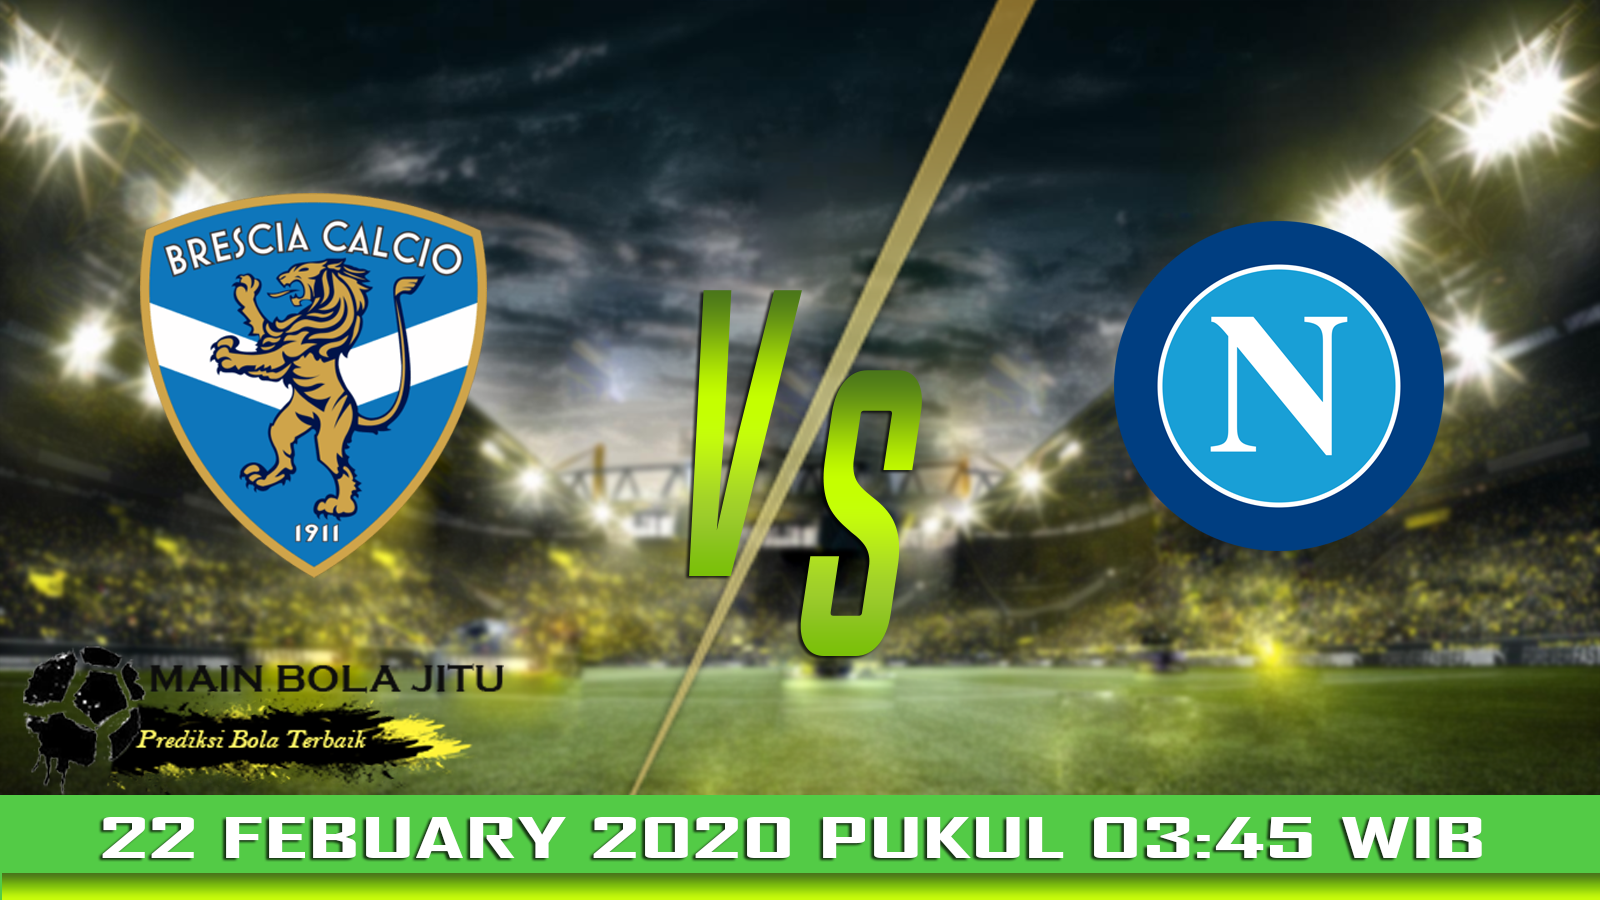 Prediksi Bola Brescia vs Napoli tanggal 22-02-2020